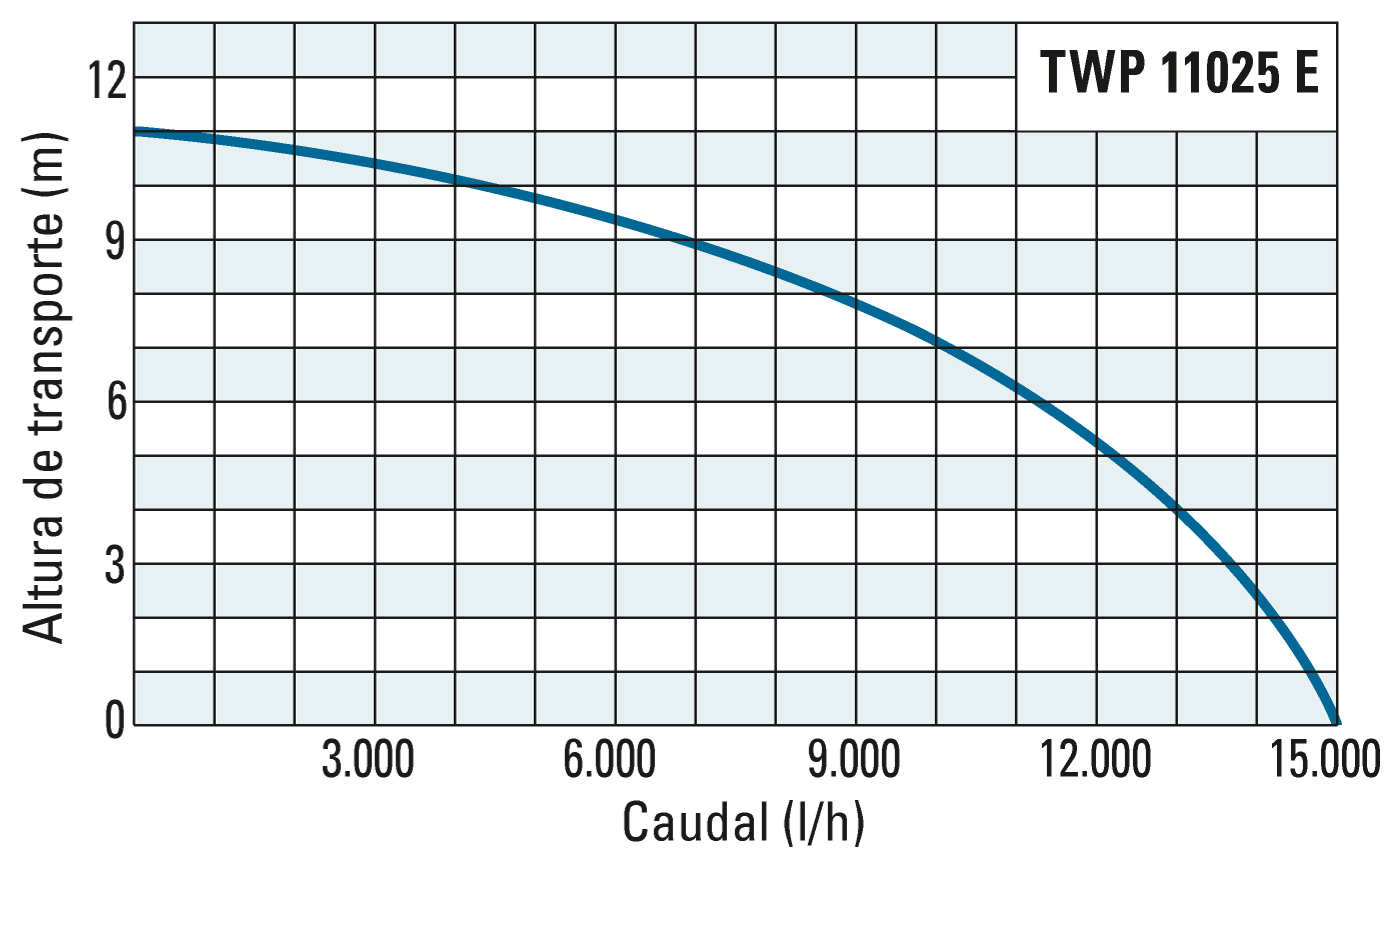 Altura de transporte e débito da TWP 11025 E